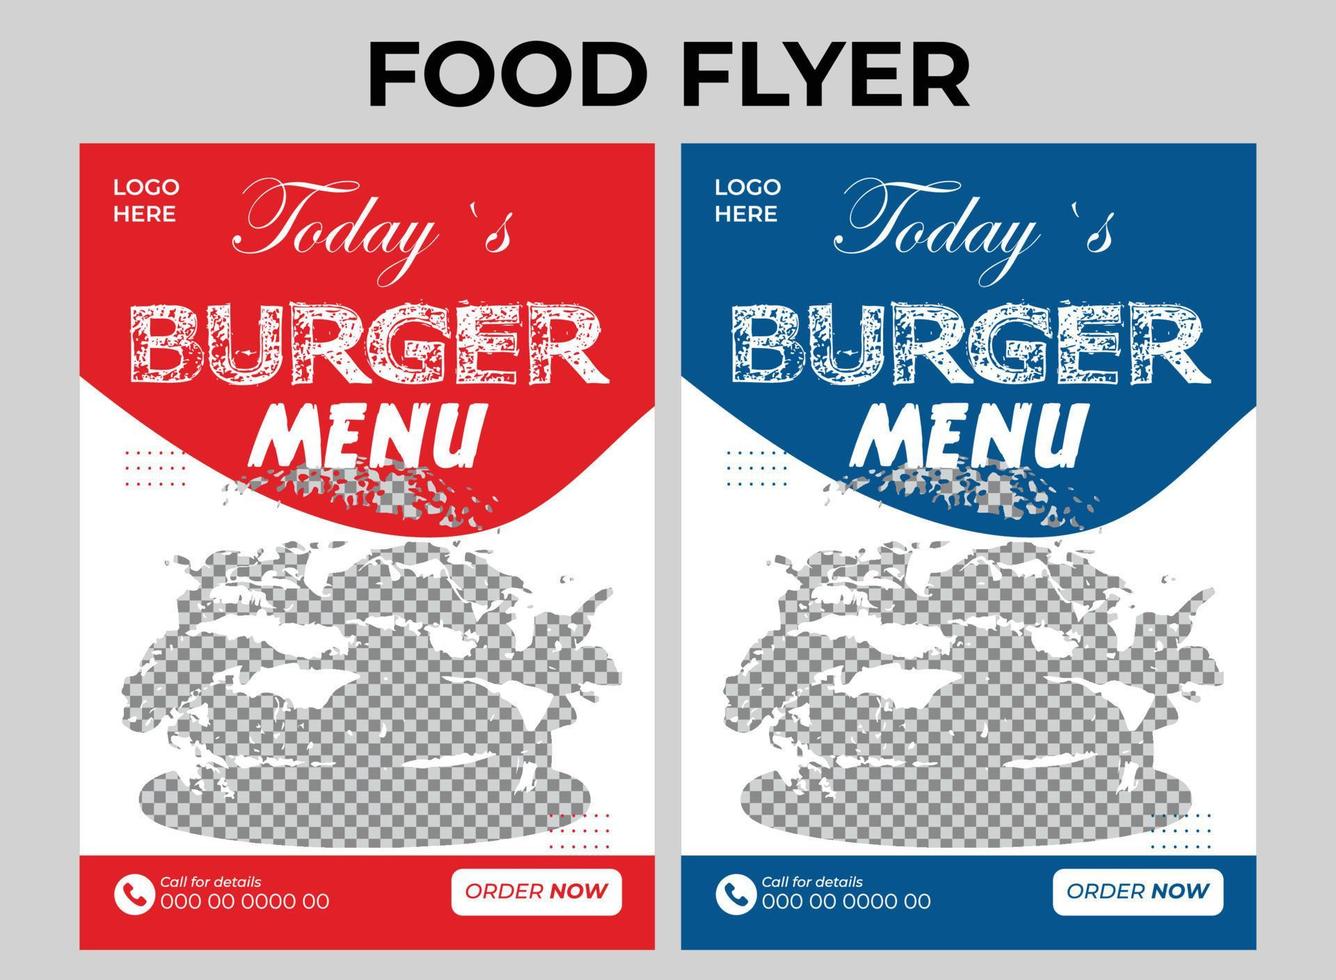 Speisekarte Restaurants Flyer Ad-Design vektor